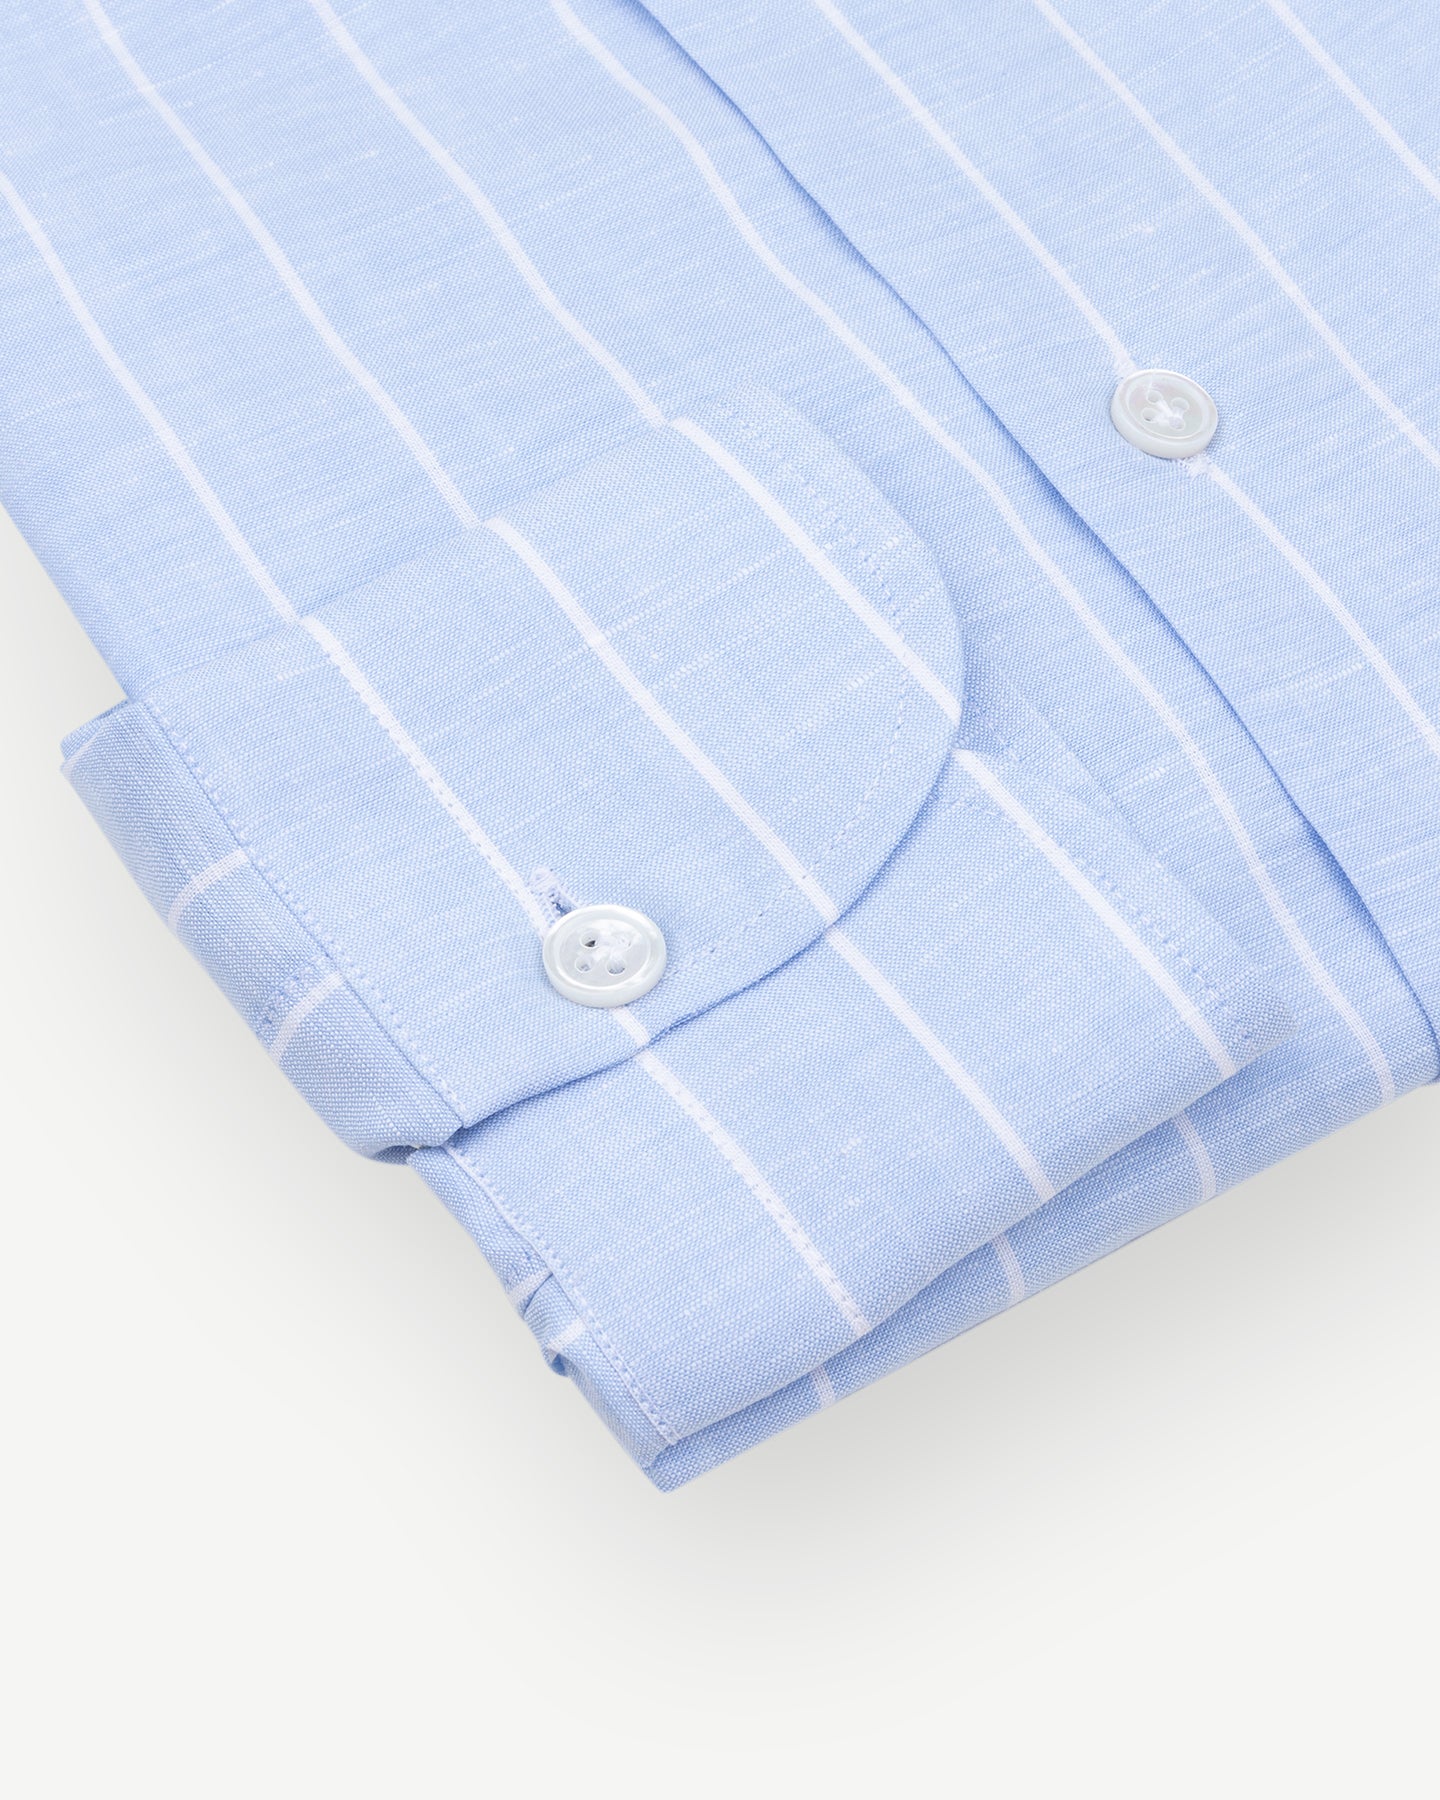 Light blue reverse stripe cotton linen shirt with single cuffs